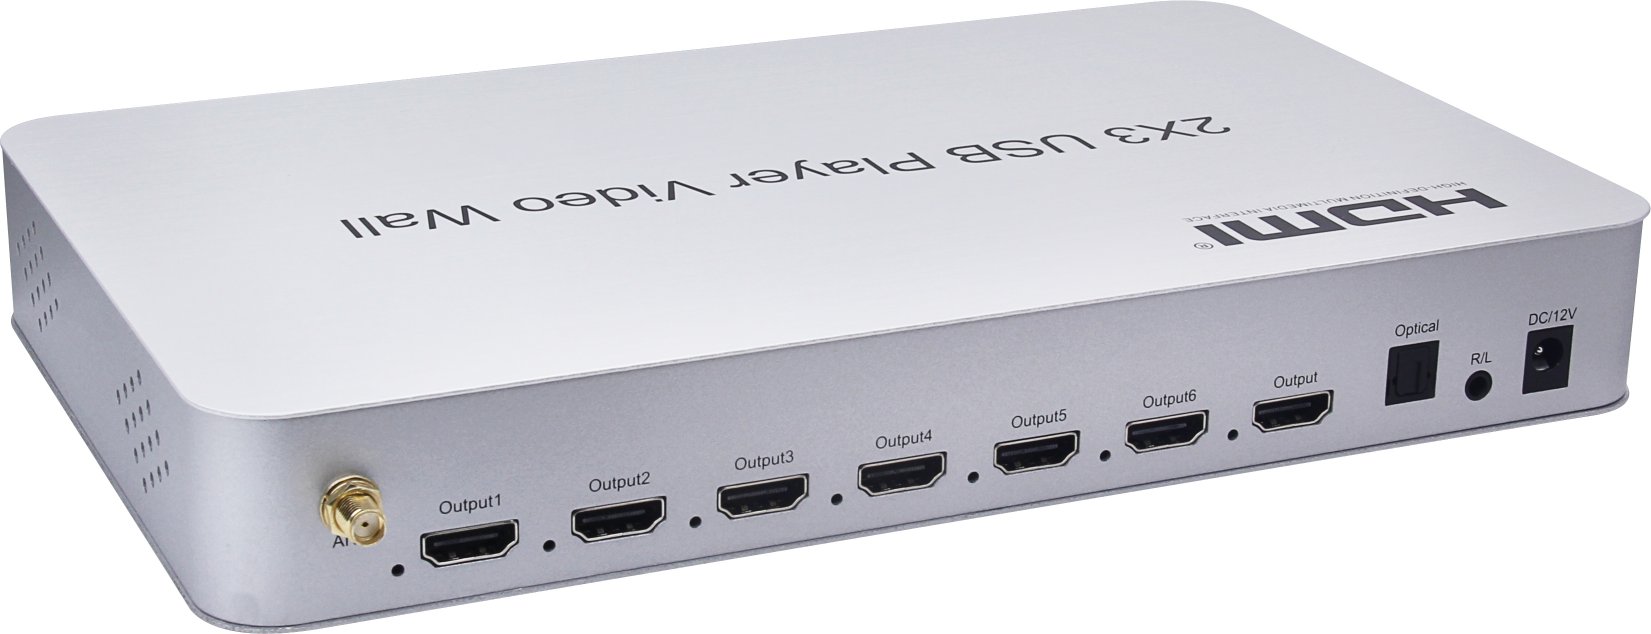 ビデオウォールコントローラ HDMI 4K入力6出力 連結で大画面構成可能 SD再生可[beTVW2x3-4K]